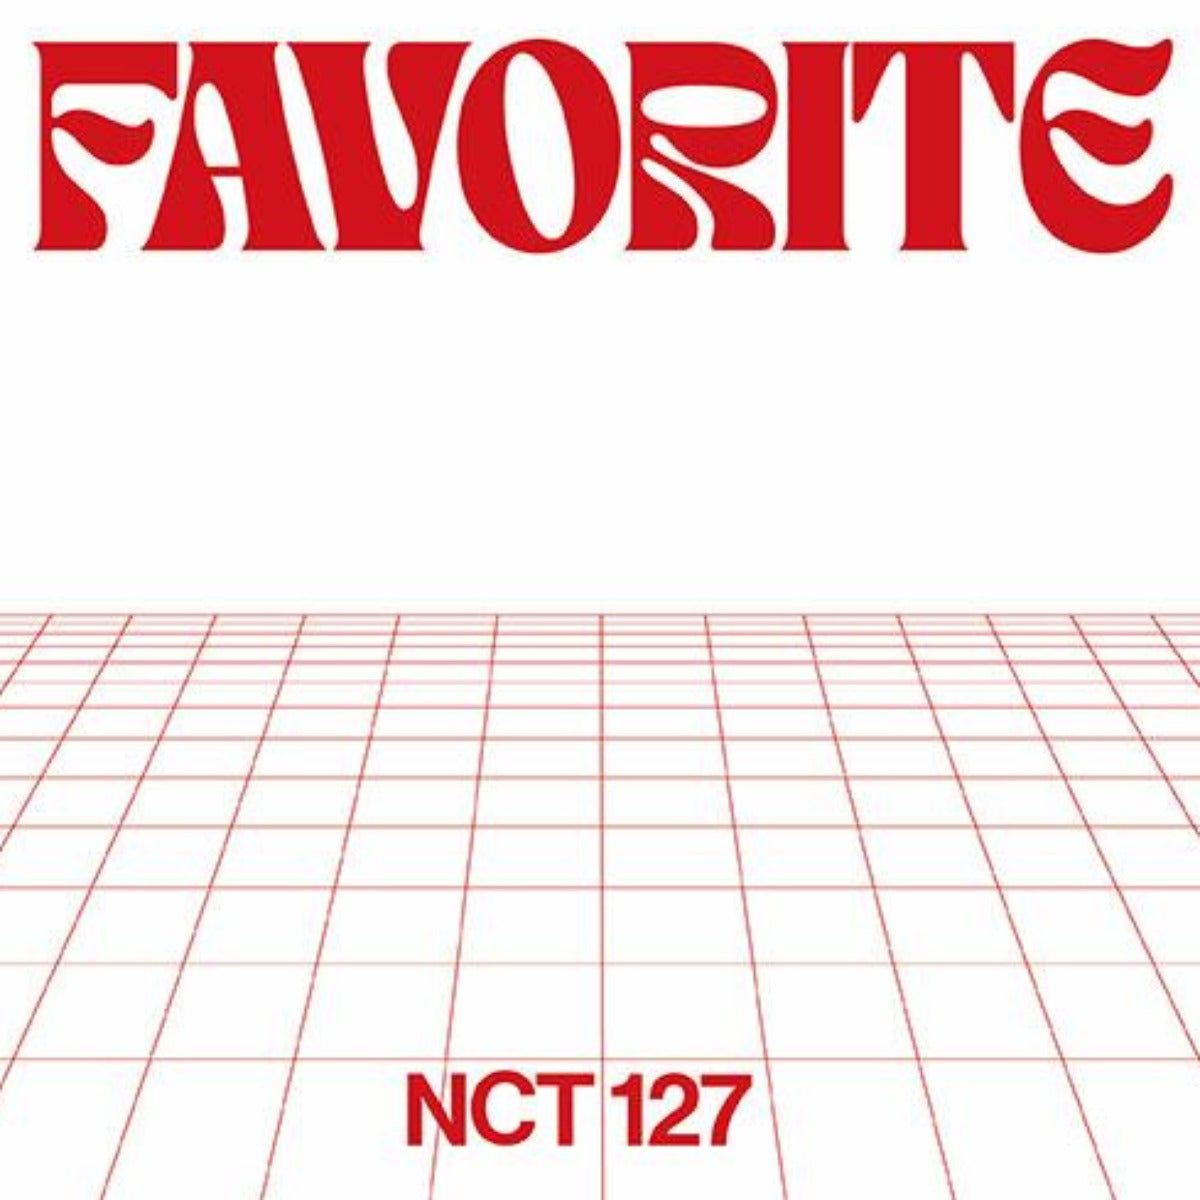 NCT 127 Vol. 3 Repackage - Favorite